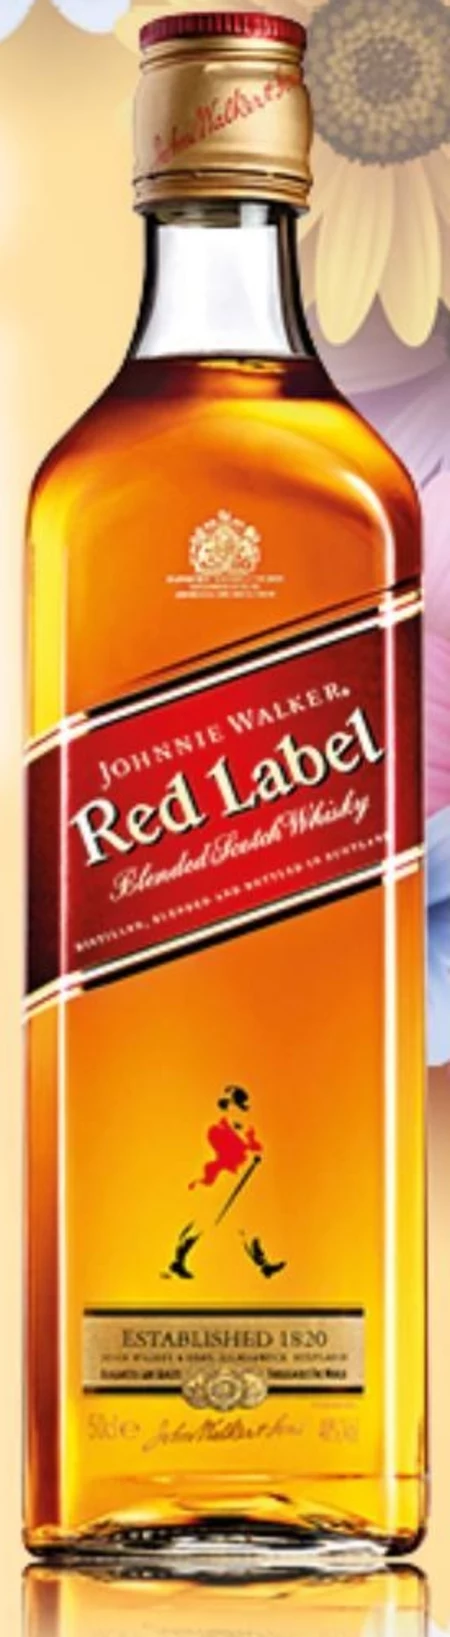 Whiskey Johnnie Walker